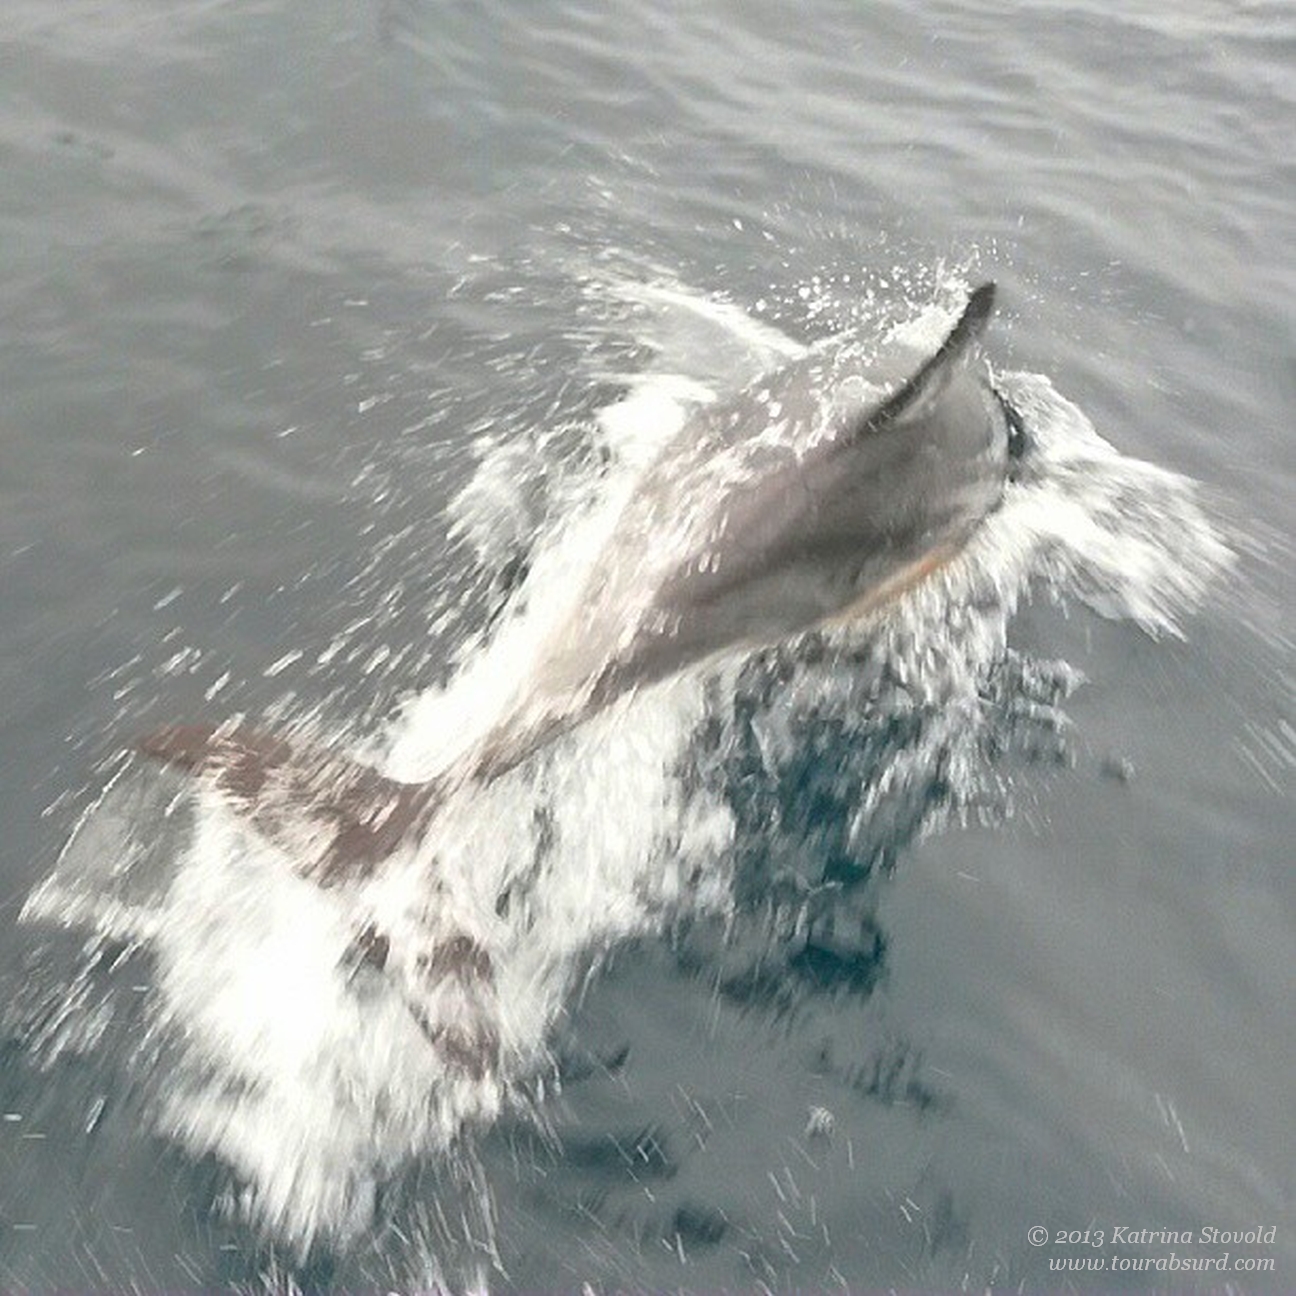 Hello, lovely dolphin!